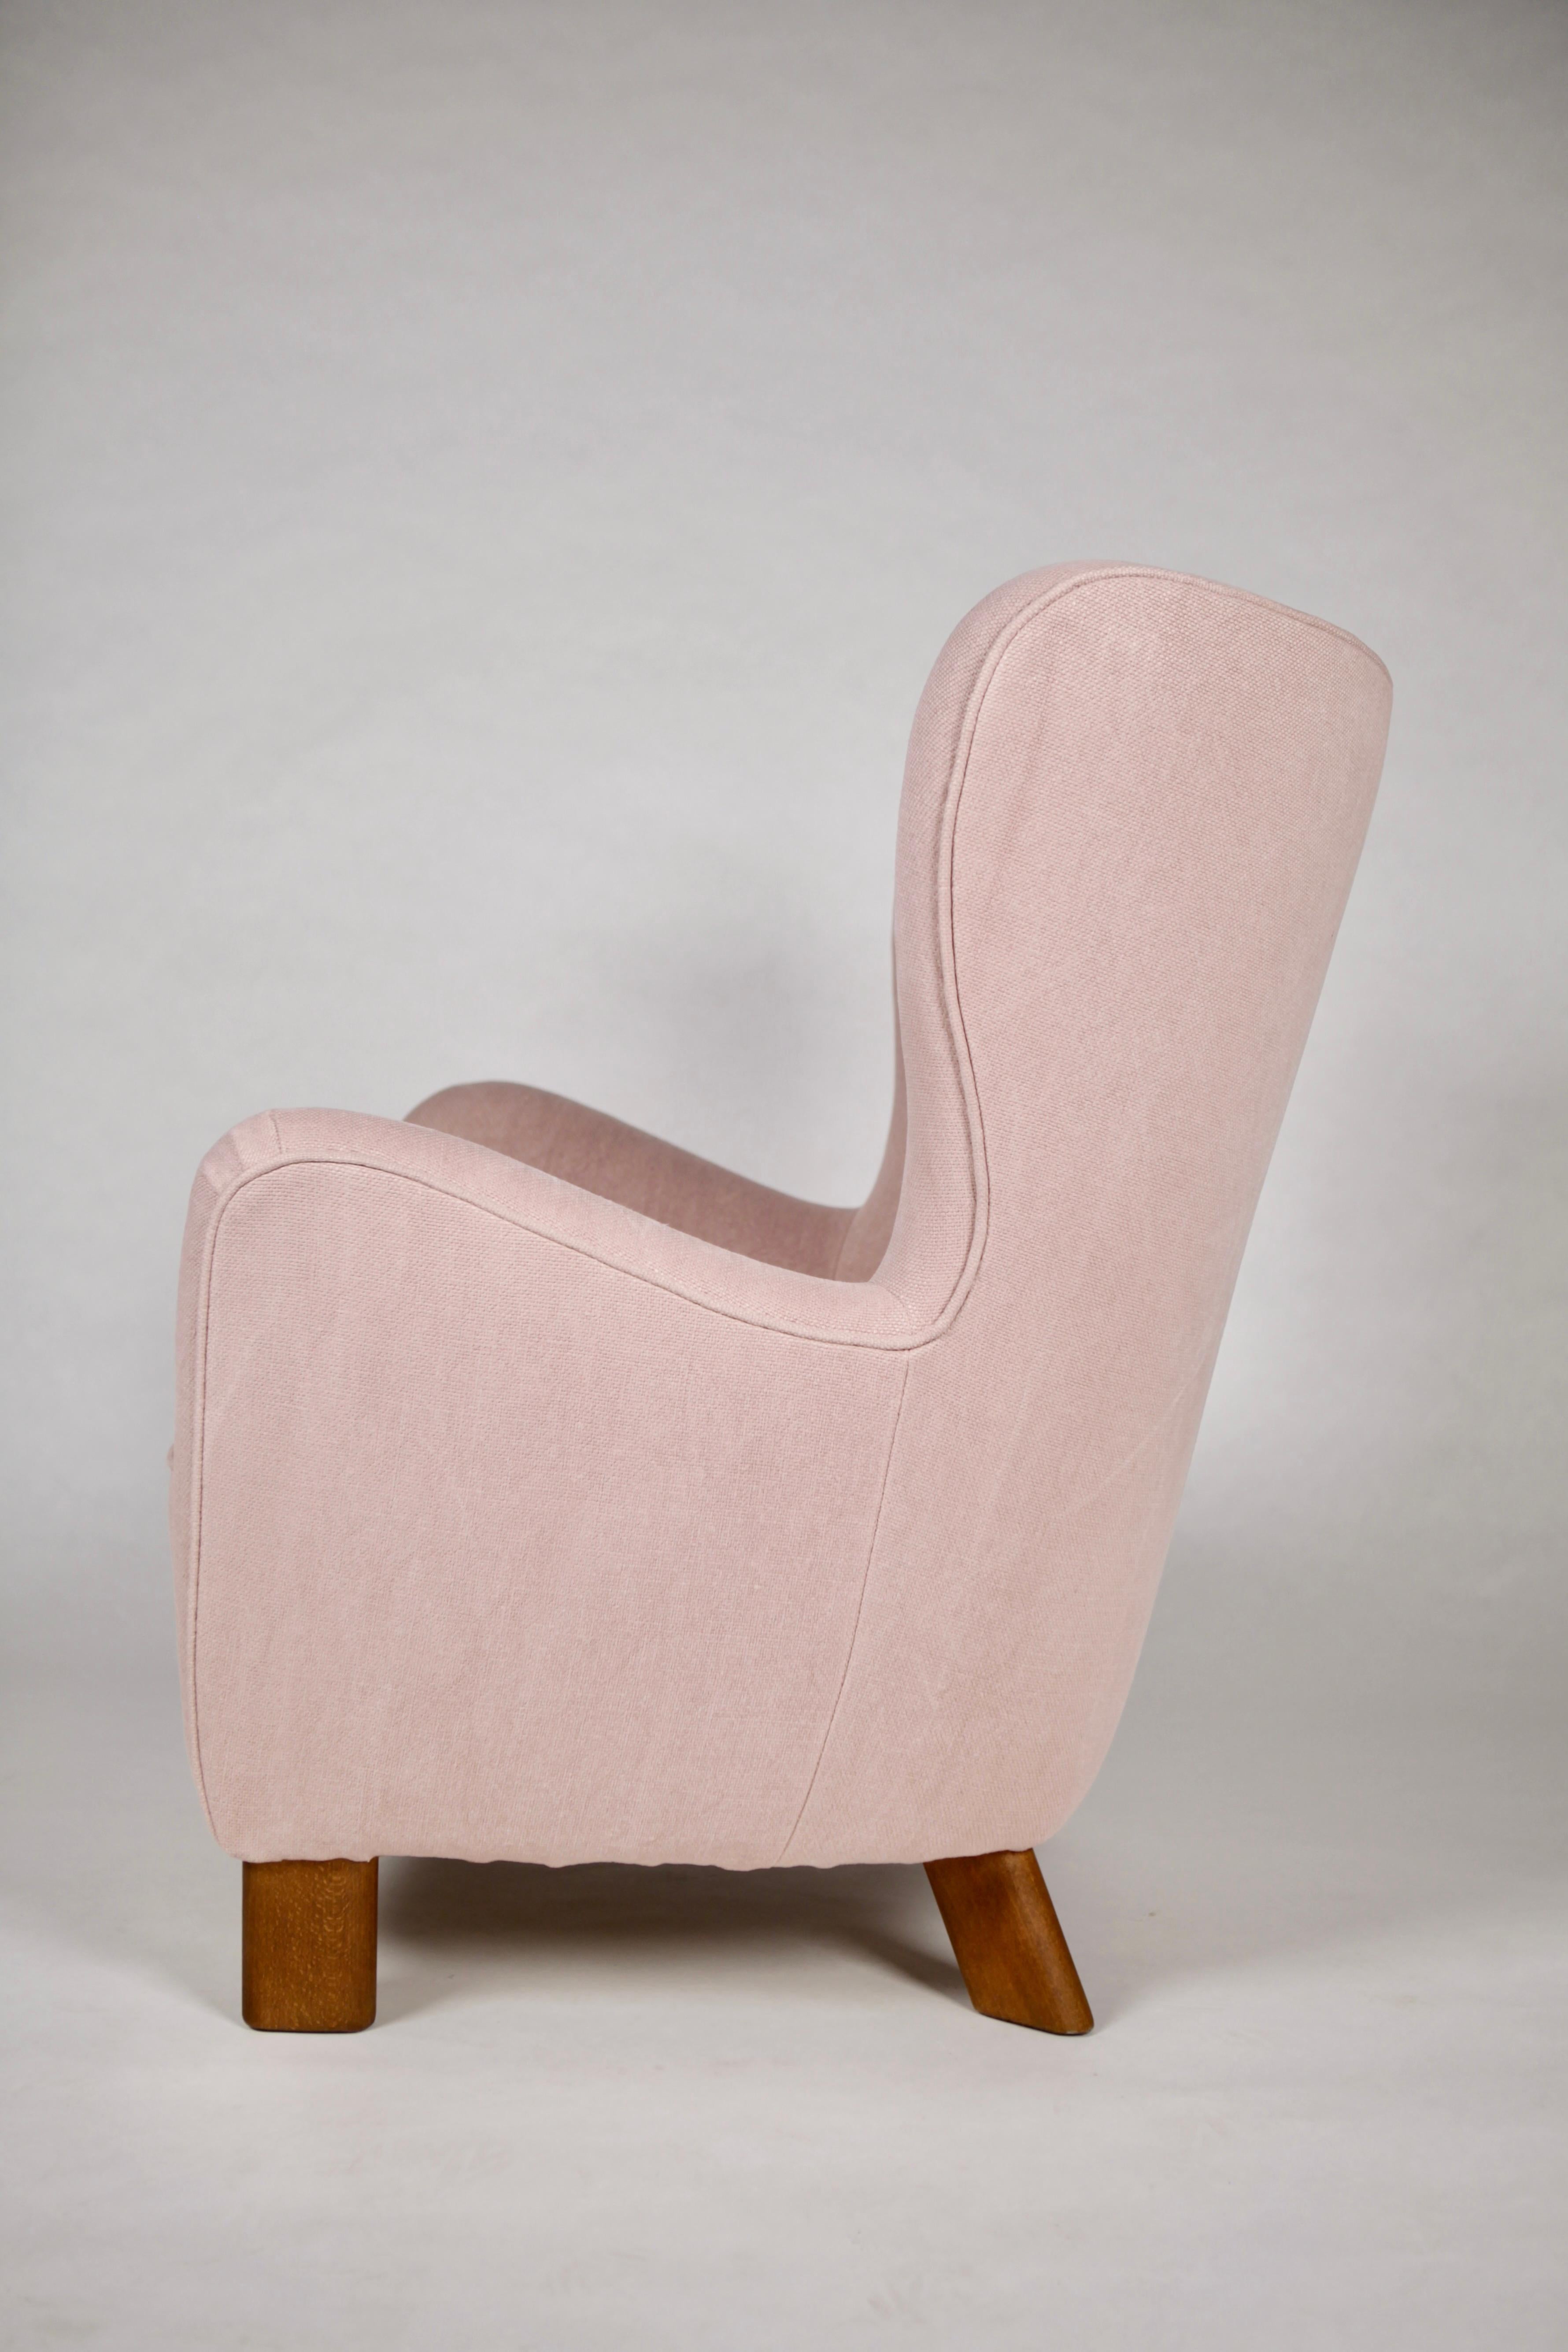 Eine seltene Fritz Hansen Hochlehner-Version des 1669 Lounge-Sessels.
Entworfen und hergestellt von Fritz Hansen,
Neu gepolstert in rohem, natürlichem, blassrosa Leinen,
Dänemark, 1940.
  